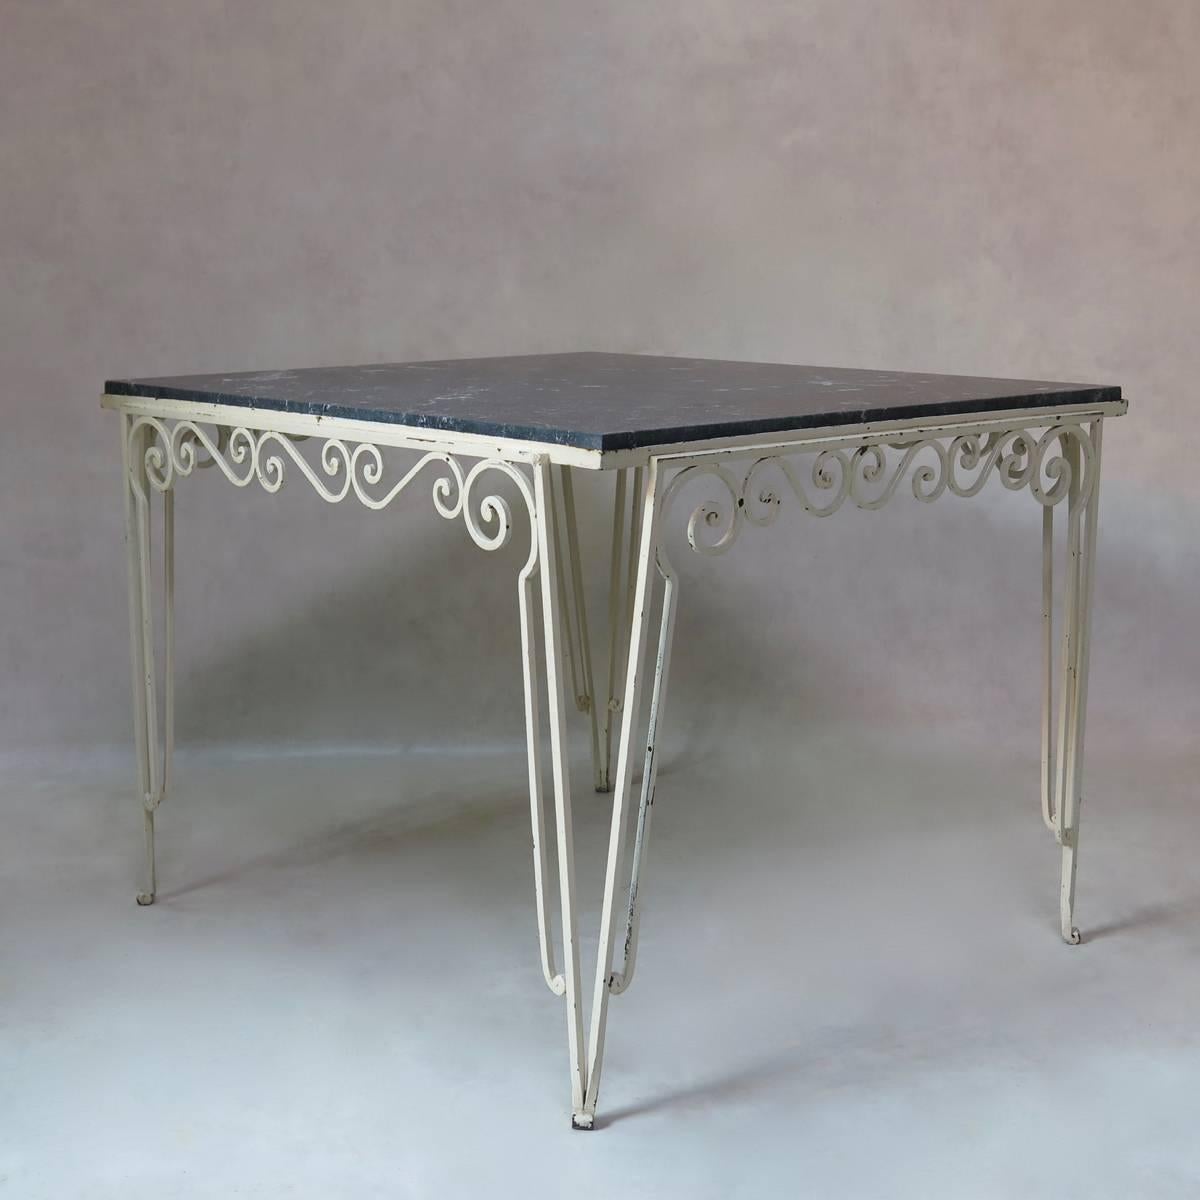 Ein ungewöhnlicher, großer und fast quadratischer Tisch mit einem lackierten schmiedeeisernen Fuß und einer schwarz-weiß gesprenkelten Steinplatte.